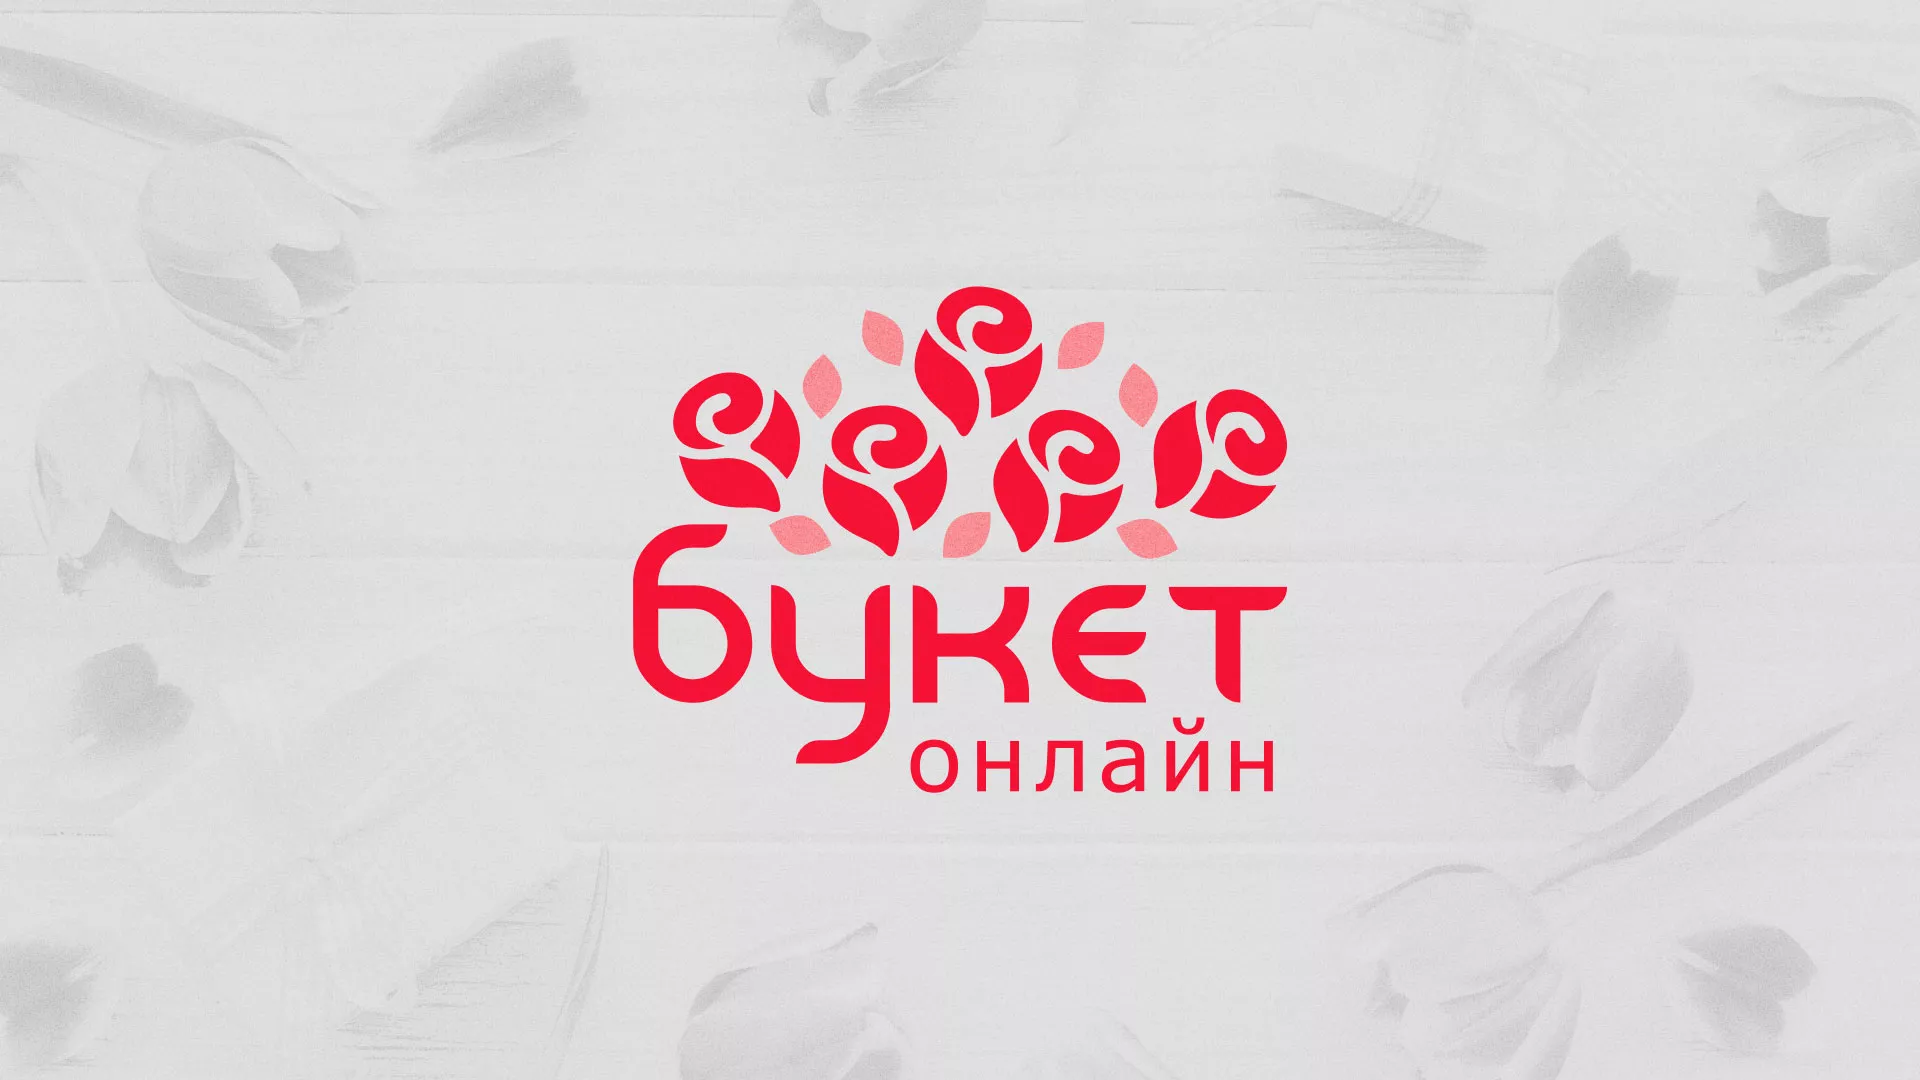 Создание интернет-магазина «Букет-онлайн» по цветам в Малоархангельске